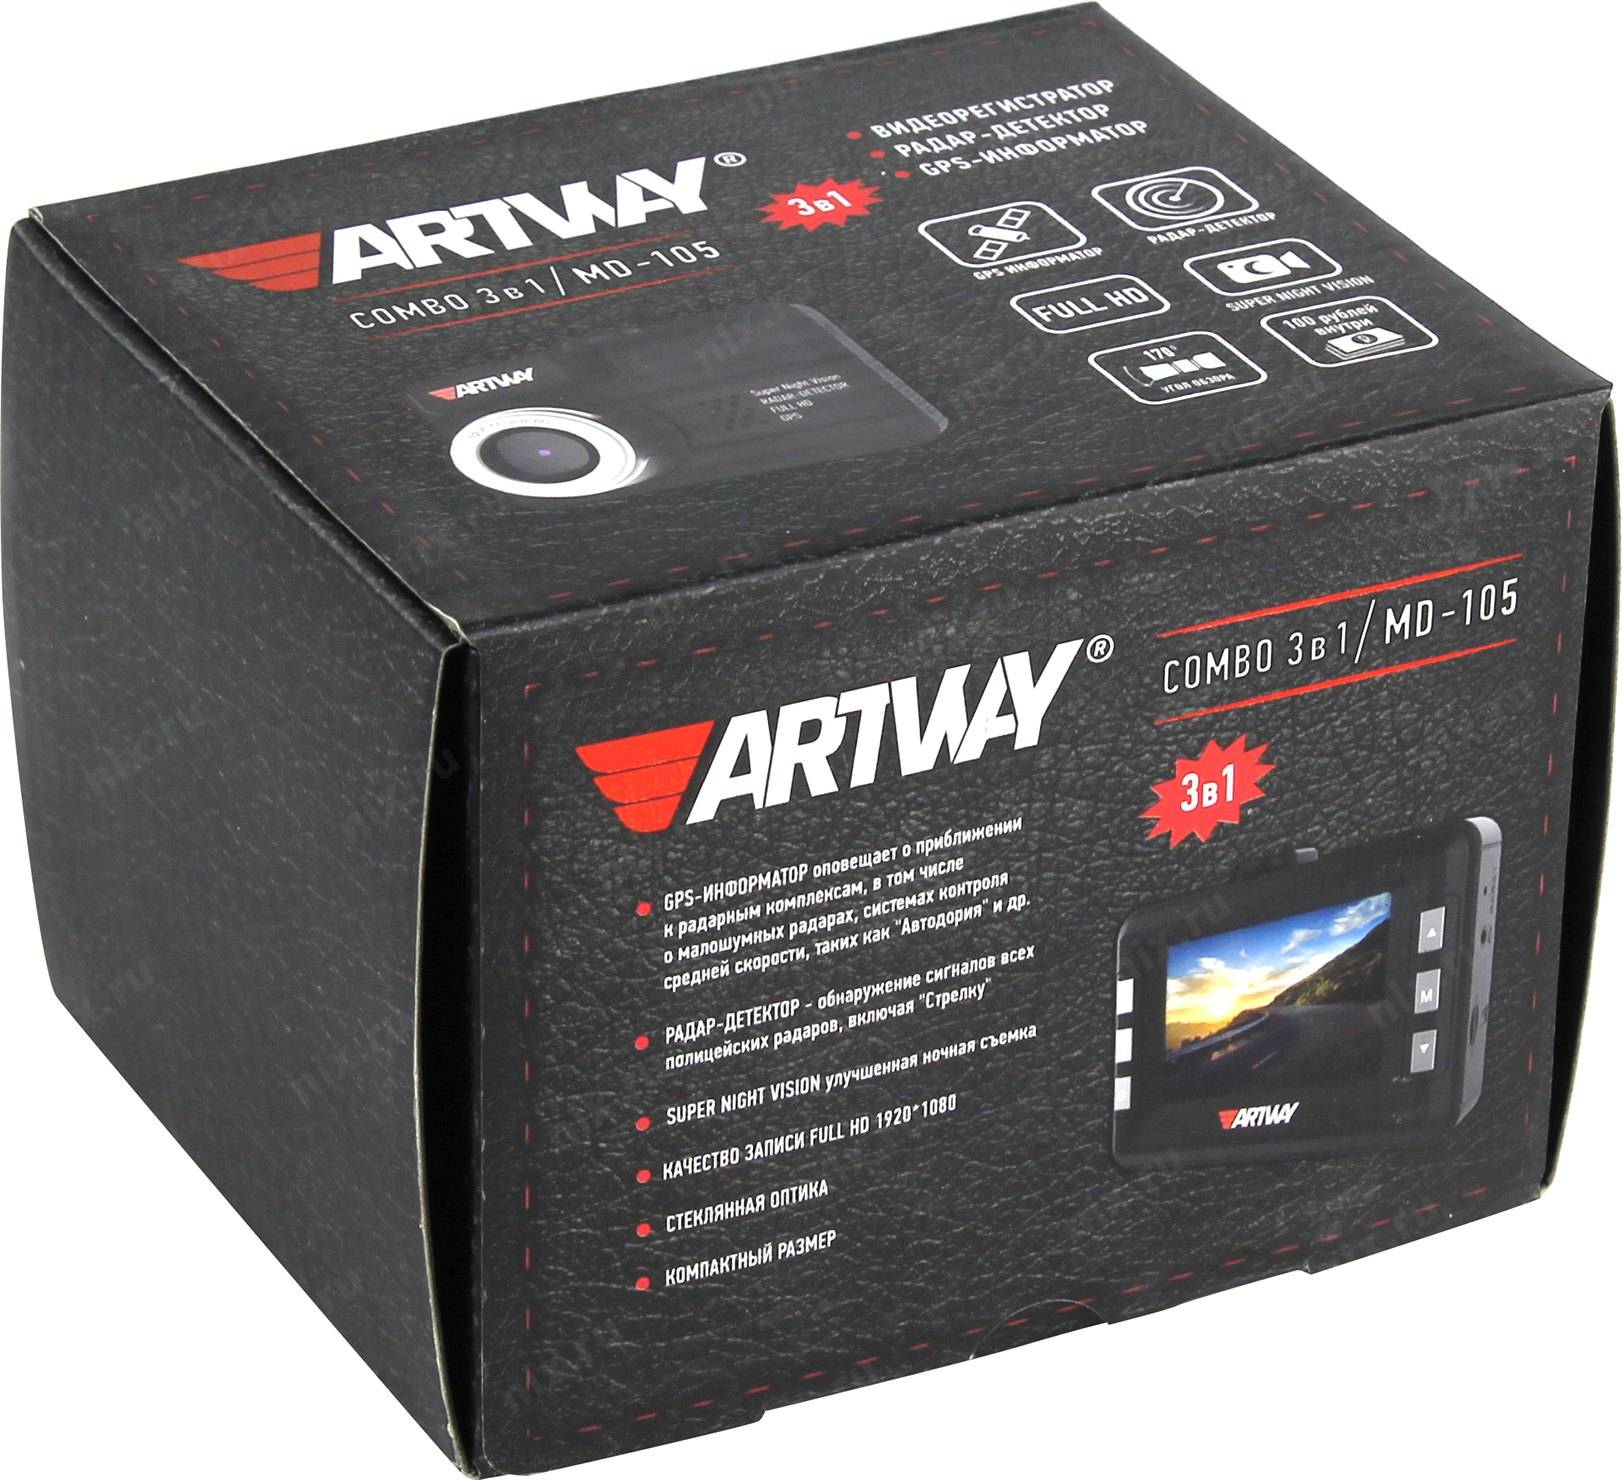 Artway md-105 | автомобильные | видеорегистраторы | концепции безопасности самара